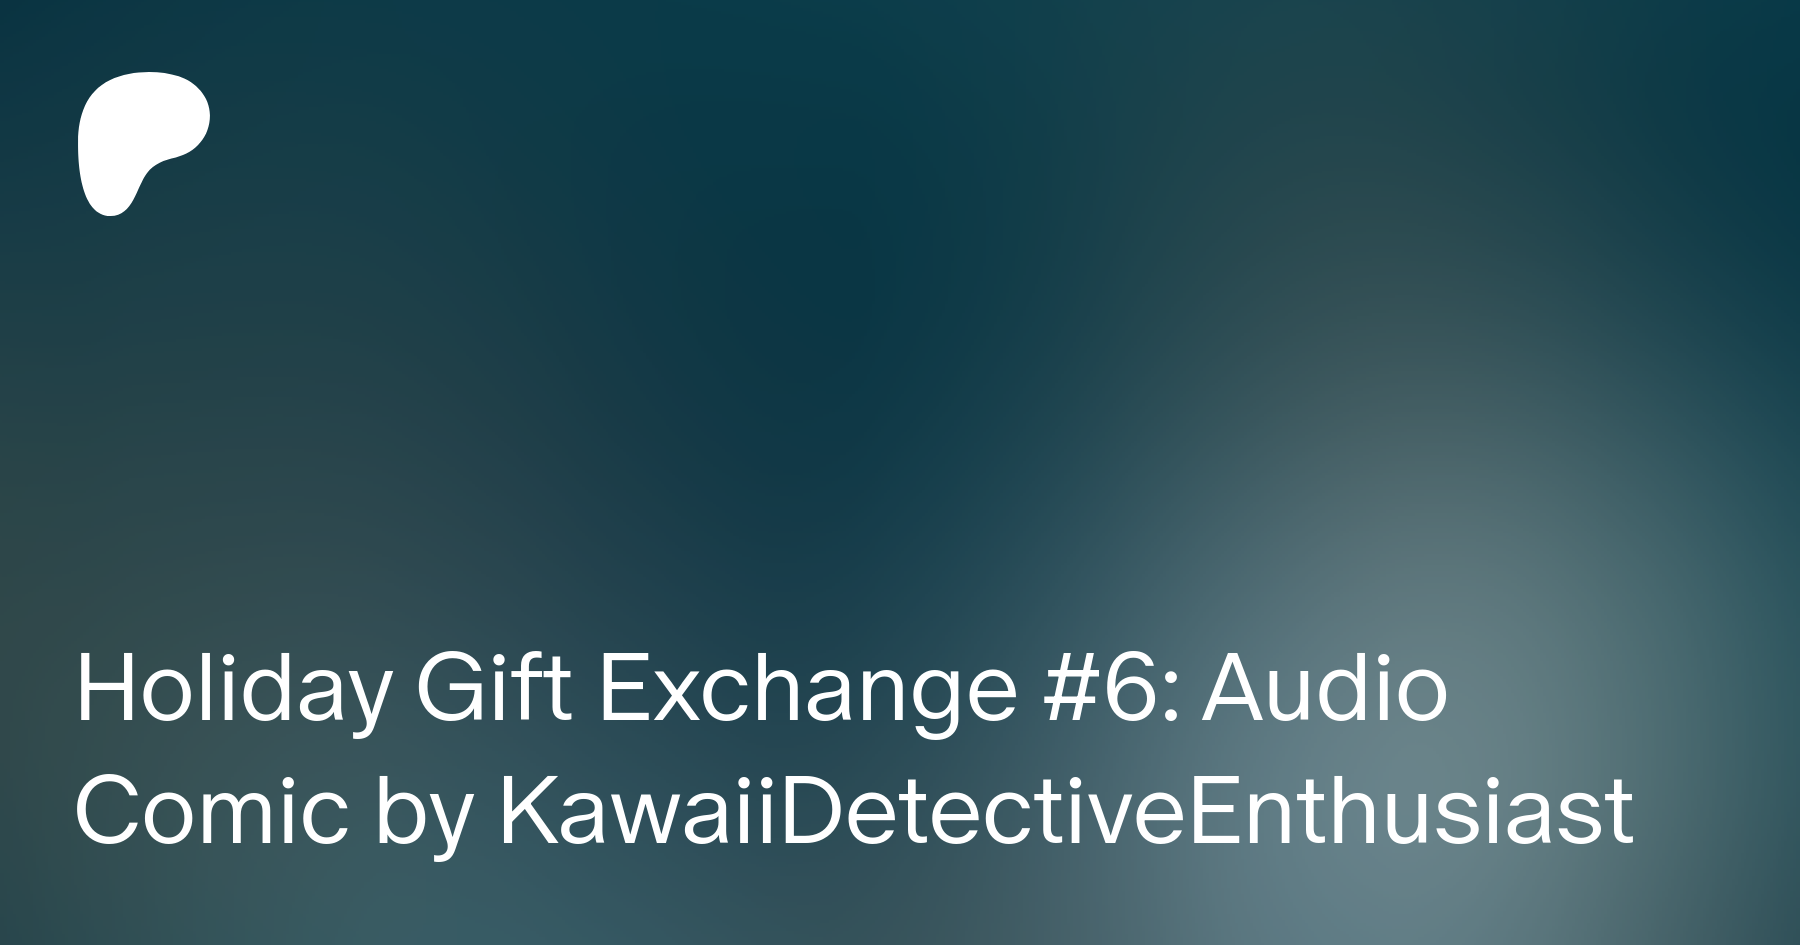 Kawaii detective enthusiast